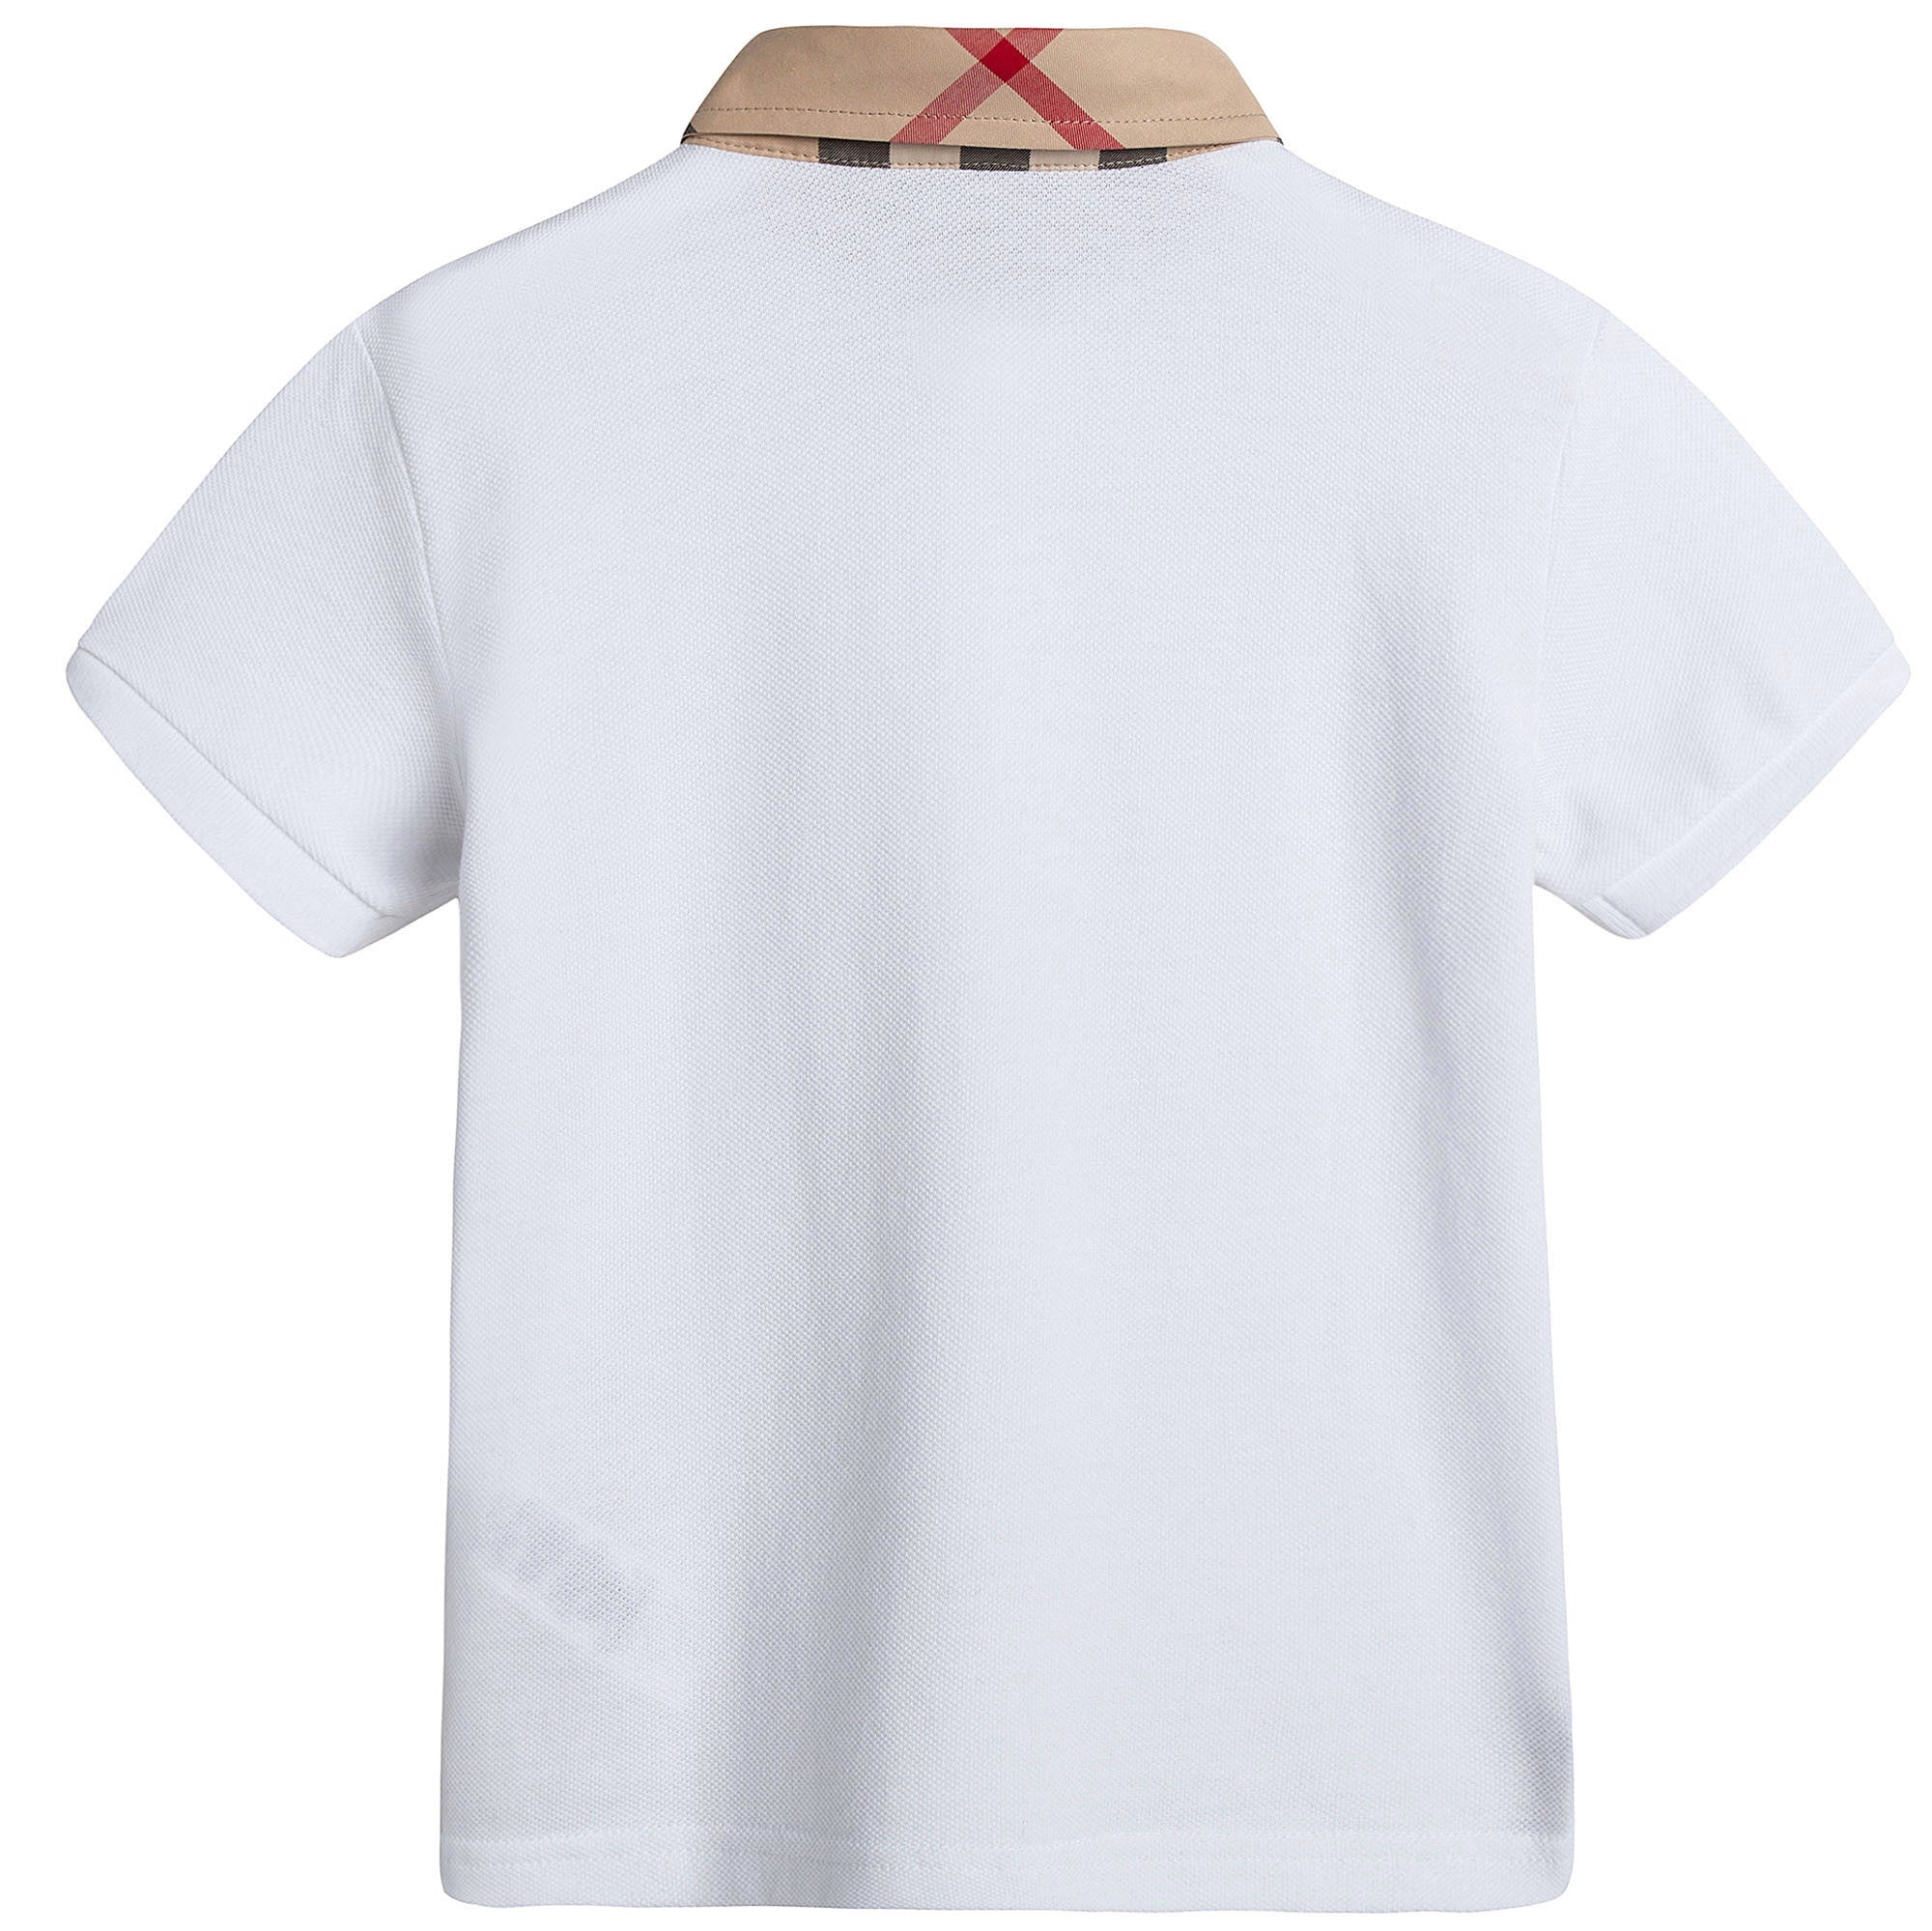 Boys White Cotton Polo Shirt With Check Collar